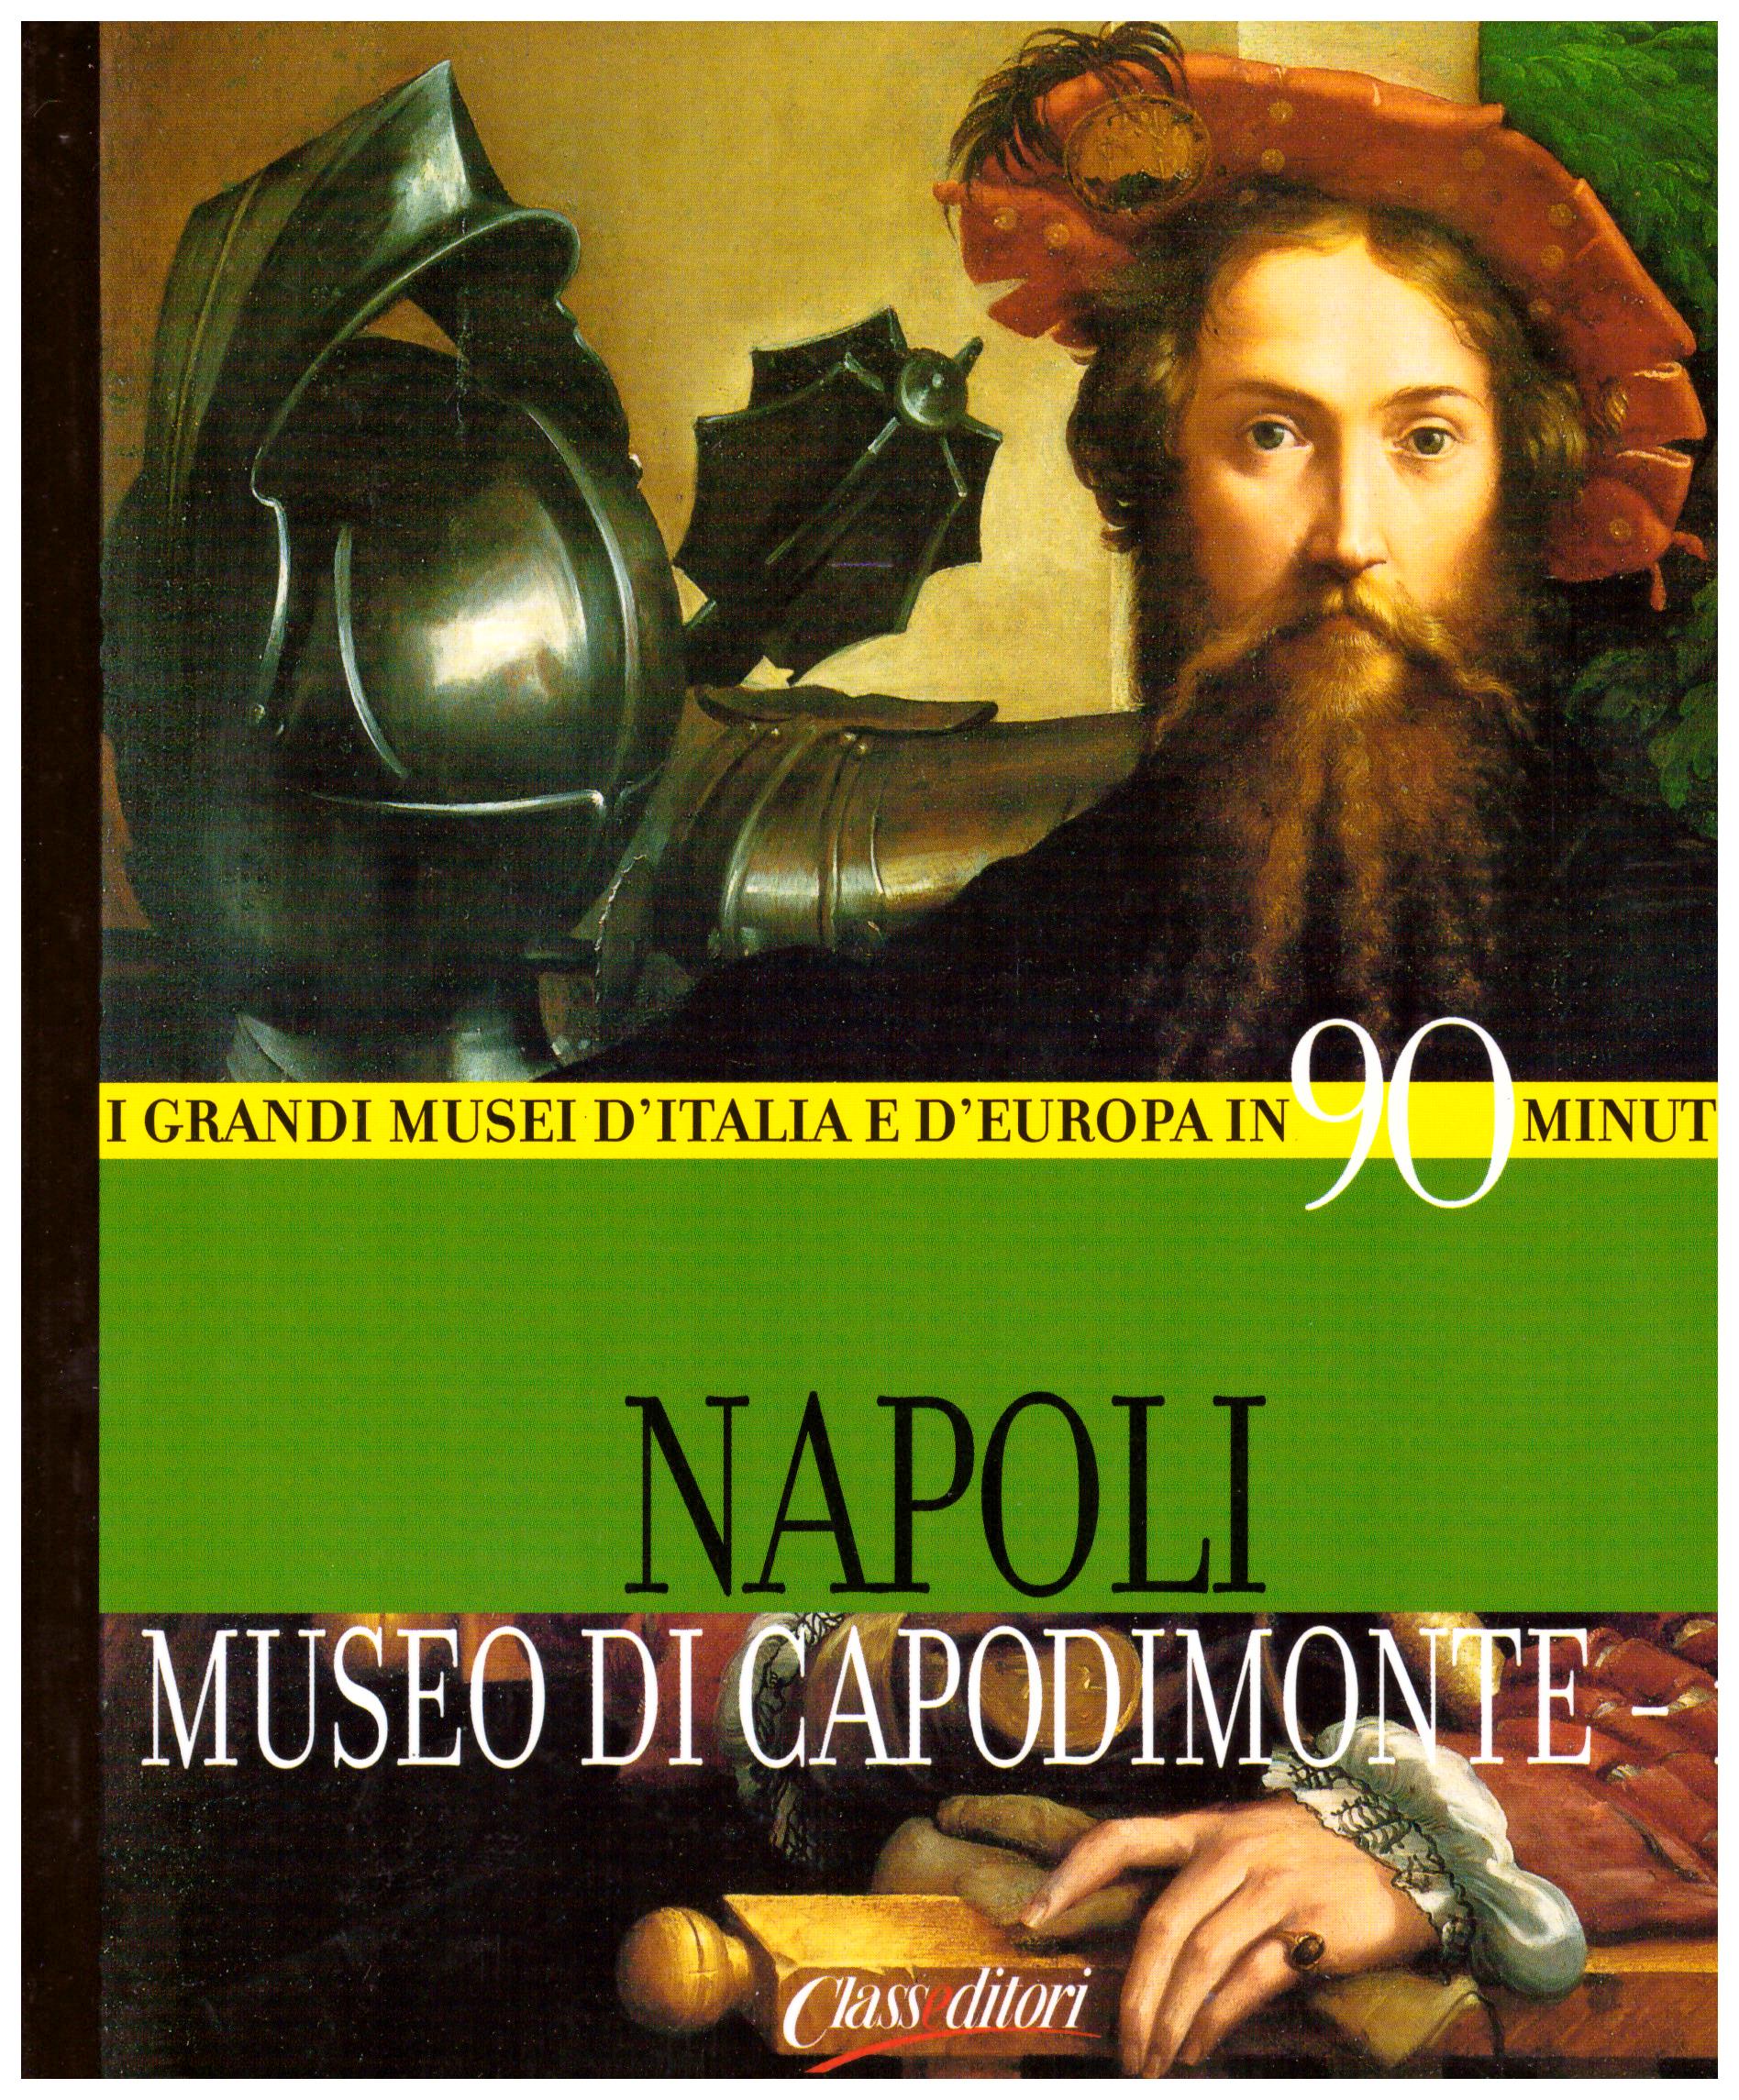 Titolo: I grandi musei d'italia e d'Europa in 90 minuti, Napoli Museo di Capodimonte-1  Autore : AA.VV.  Editore: class editori